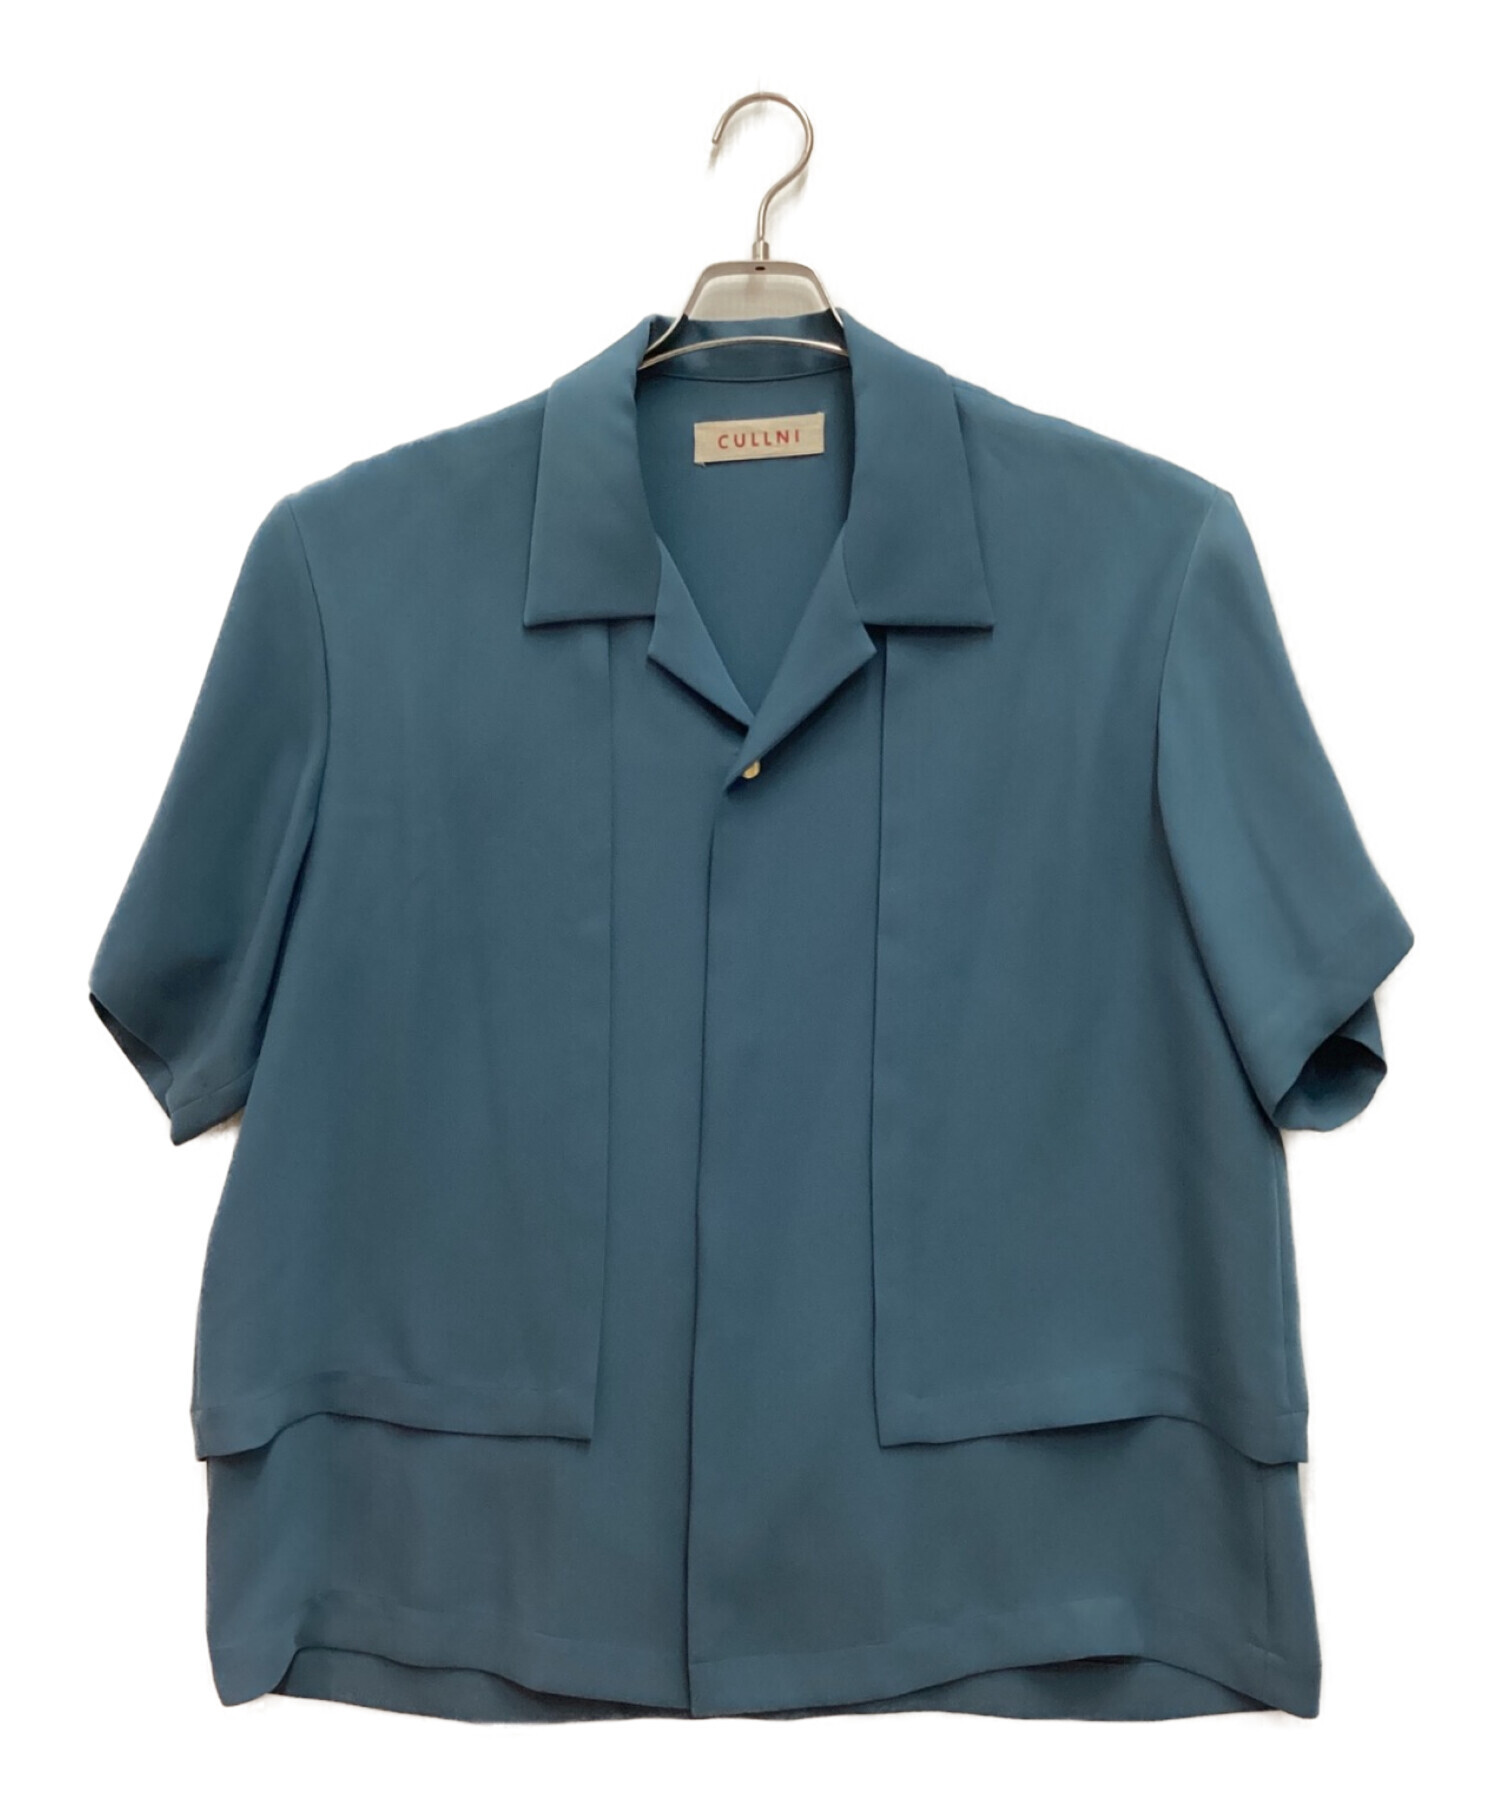 5,760円CULLNI 半袖 ブルーシャツ